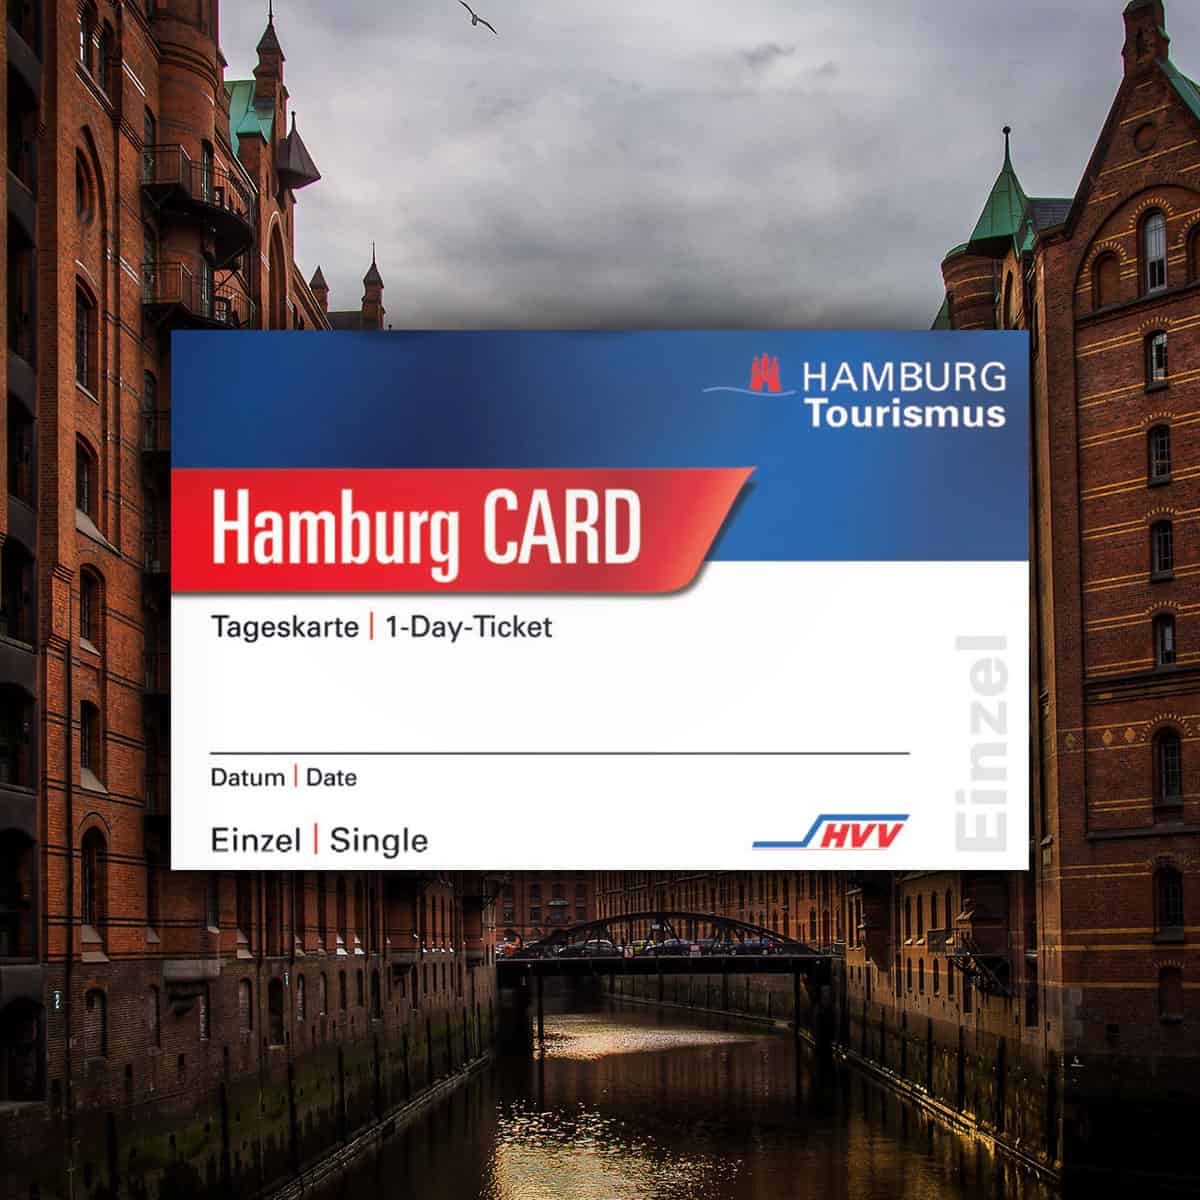 Hamburg Card Tageskarte